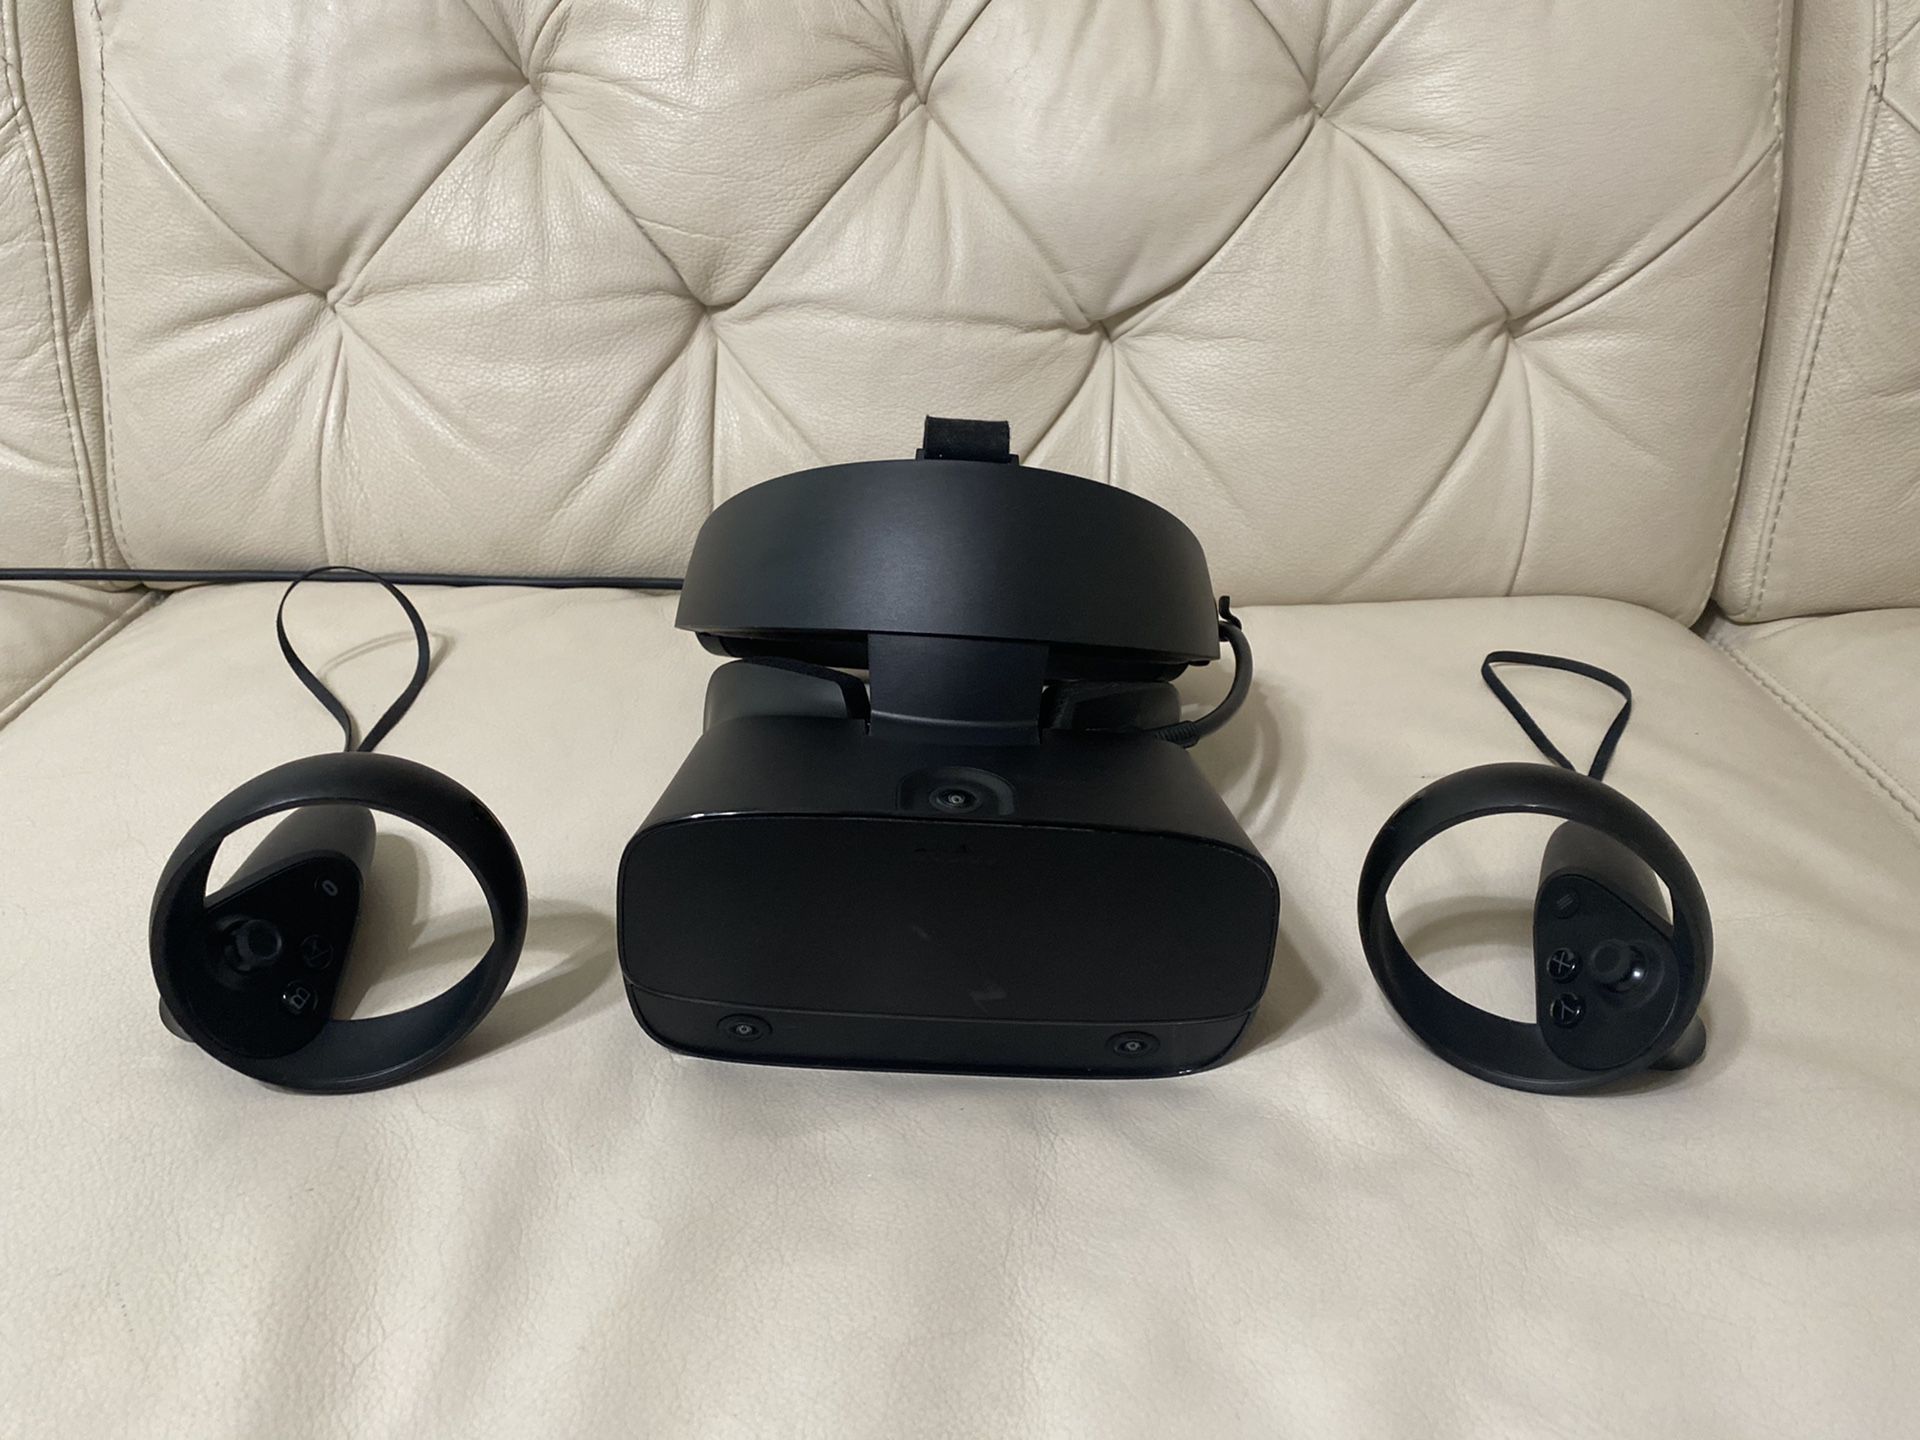 Oculus Rift S VR PC